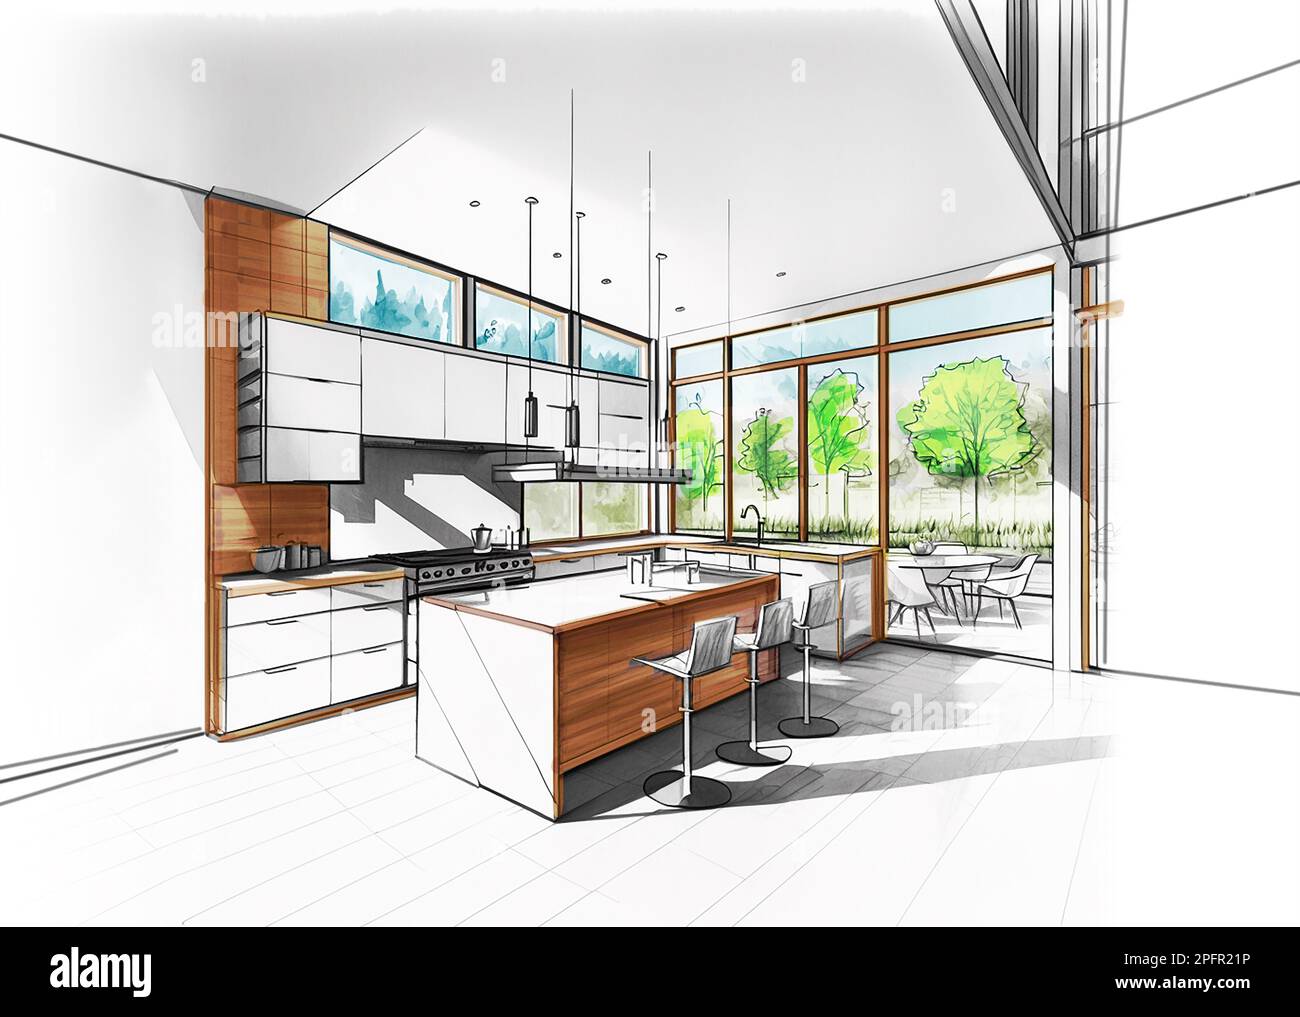 Dibujo de boceto coloreado de una cocina moderna, diseño arquitectónico Foto de stock